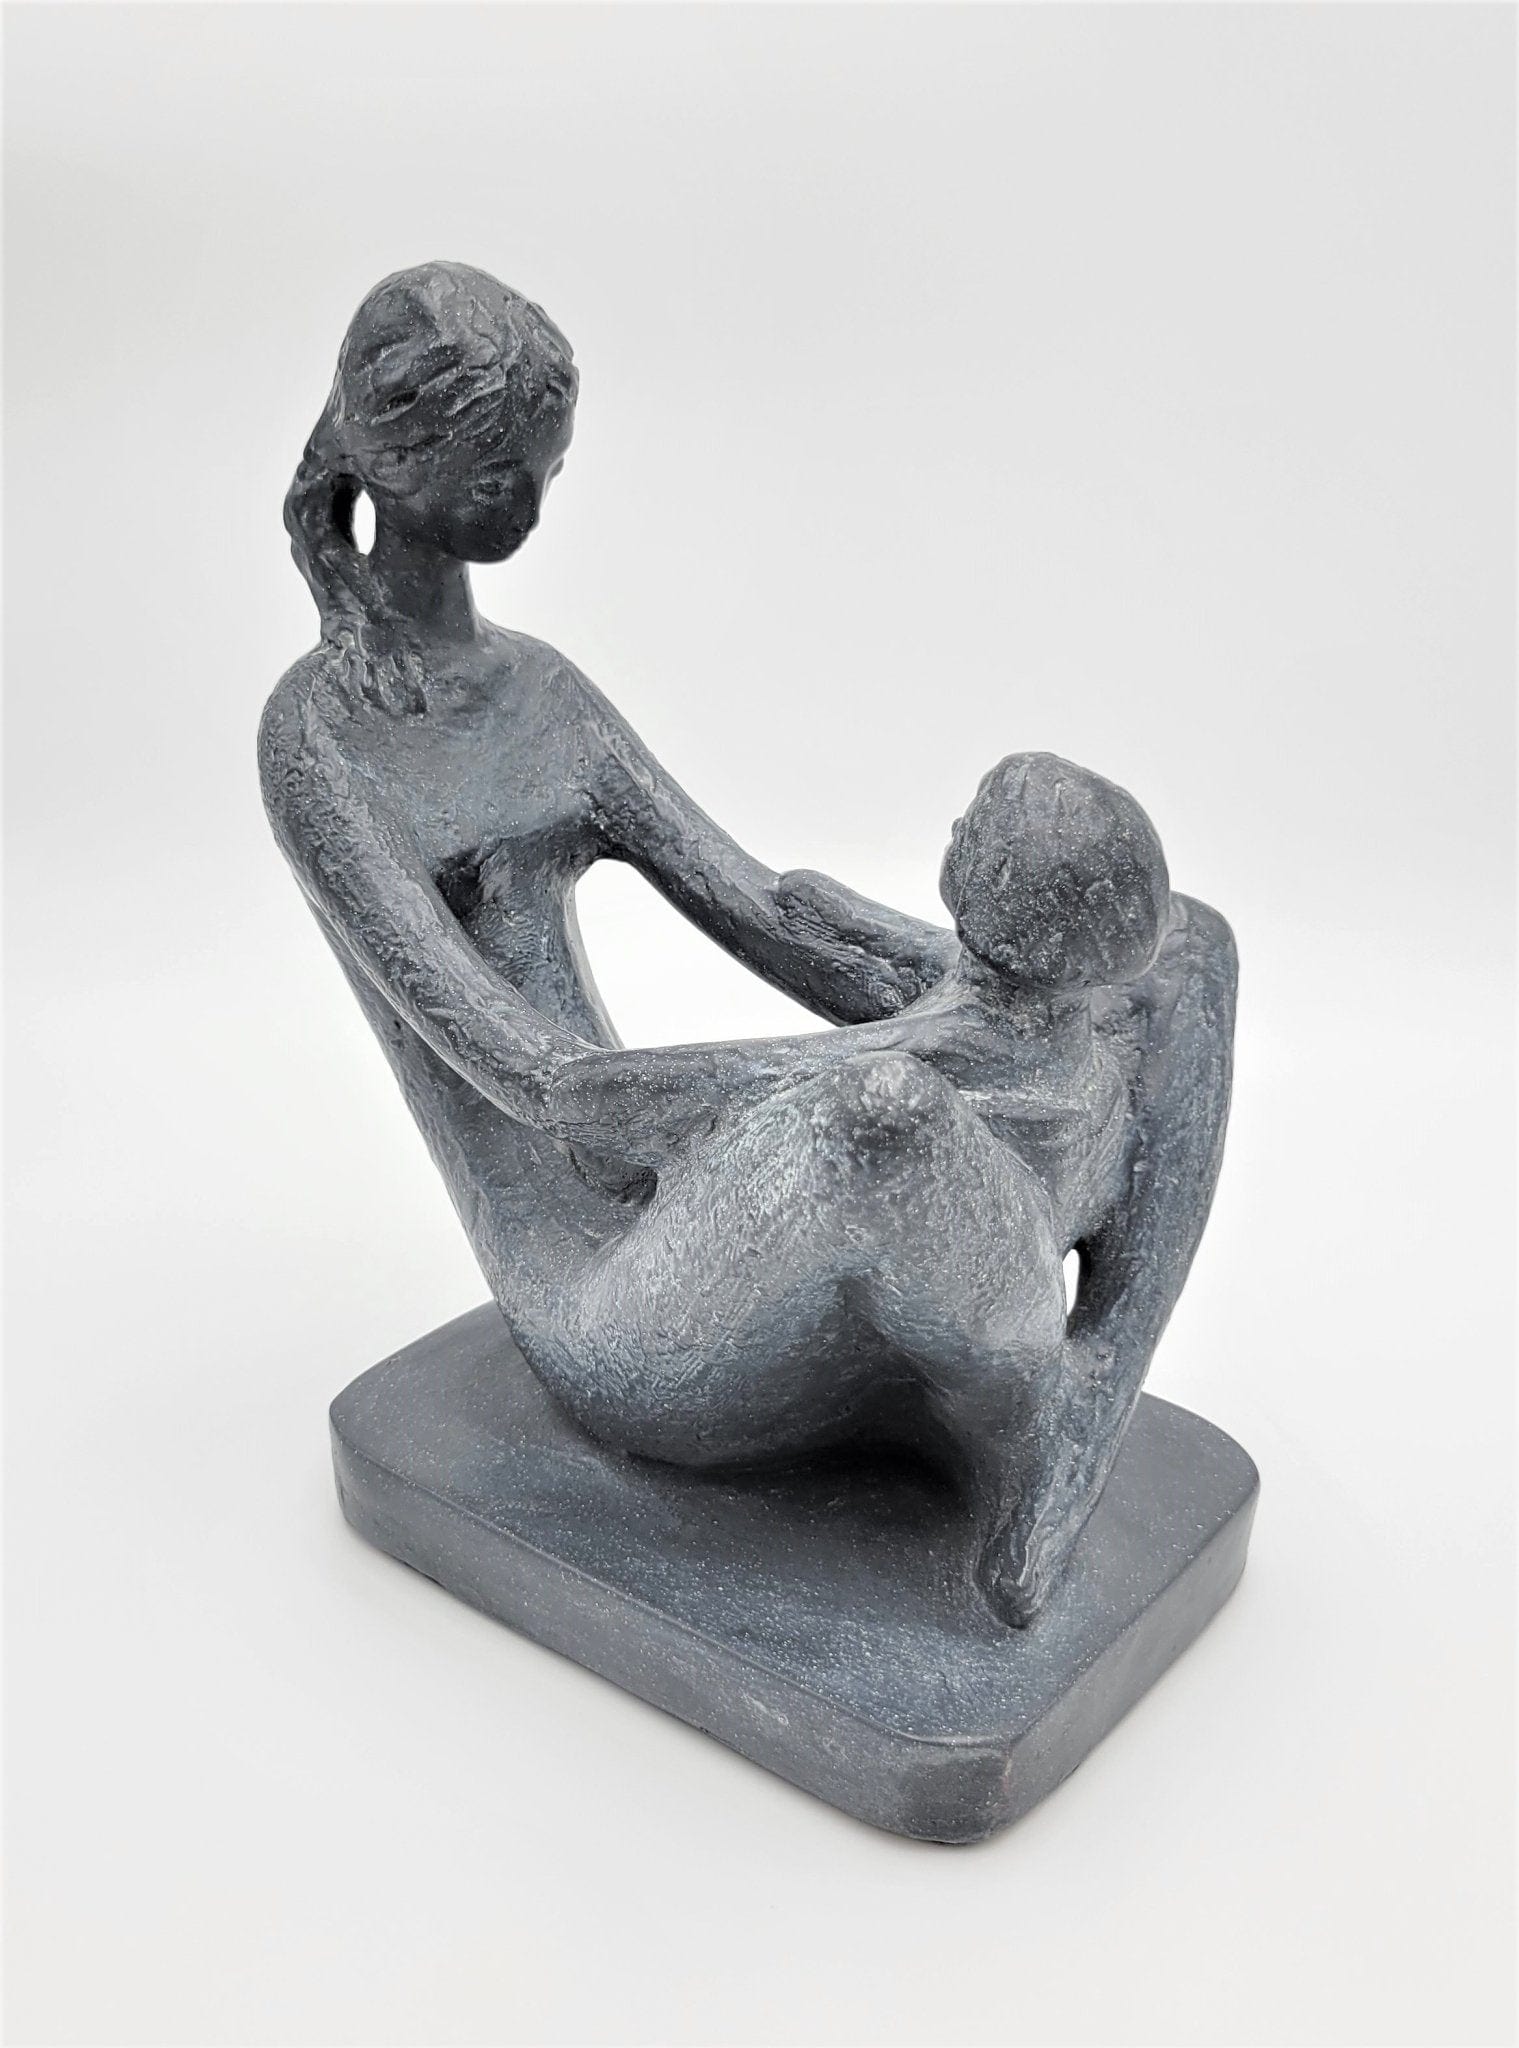 Austin Productions Sculpture Austin Productions Ceramic Kathy Klein "Generations" Mother/Child Sculpture 1972